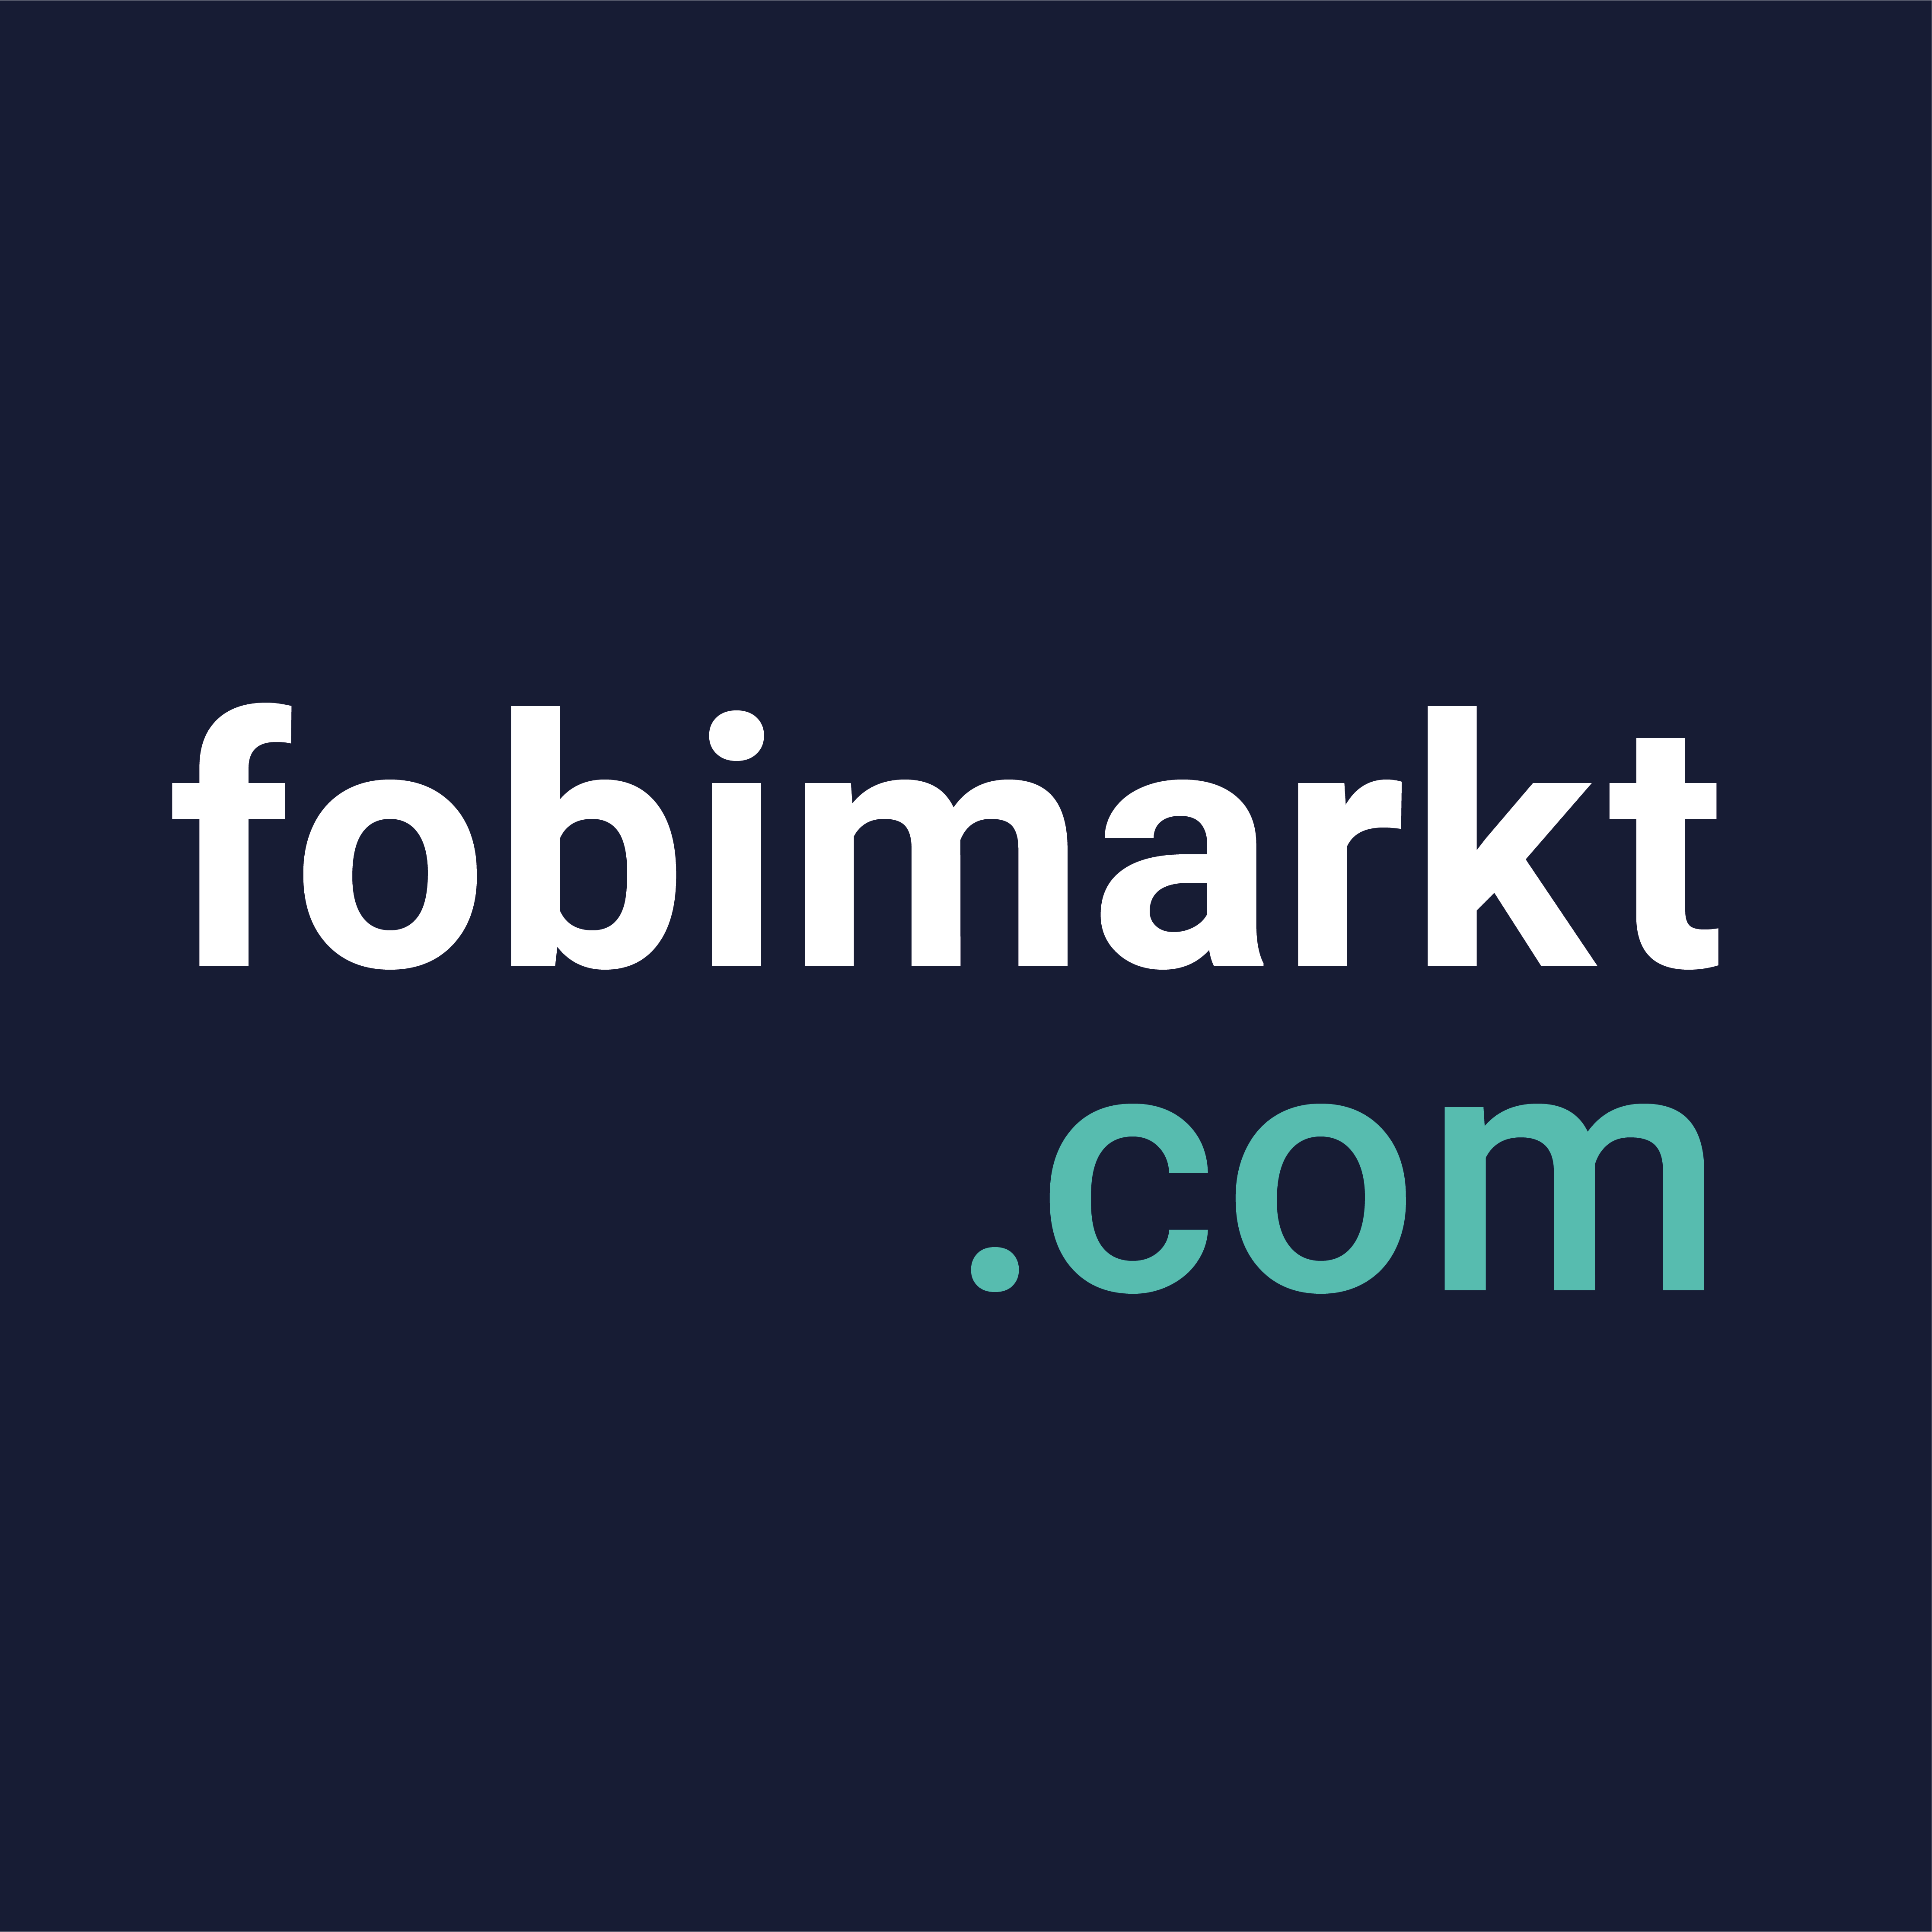 fobimarkt.com